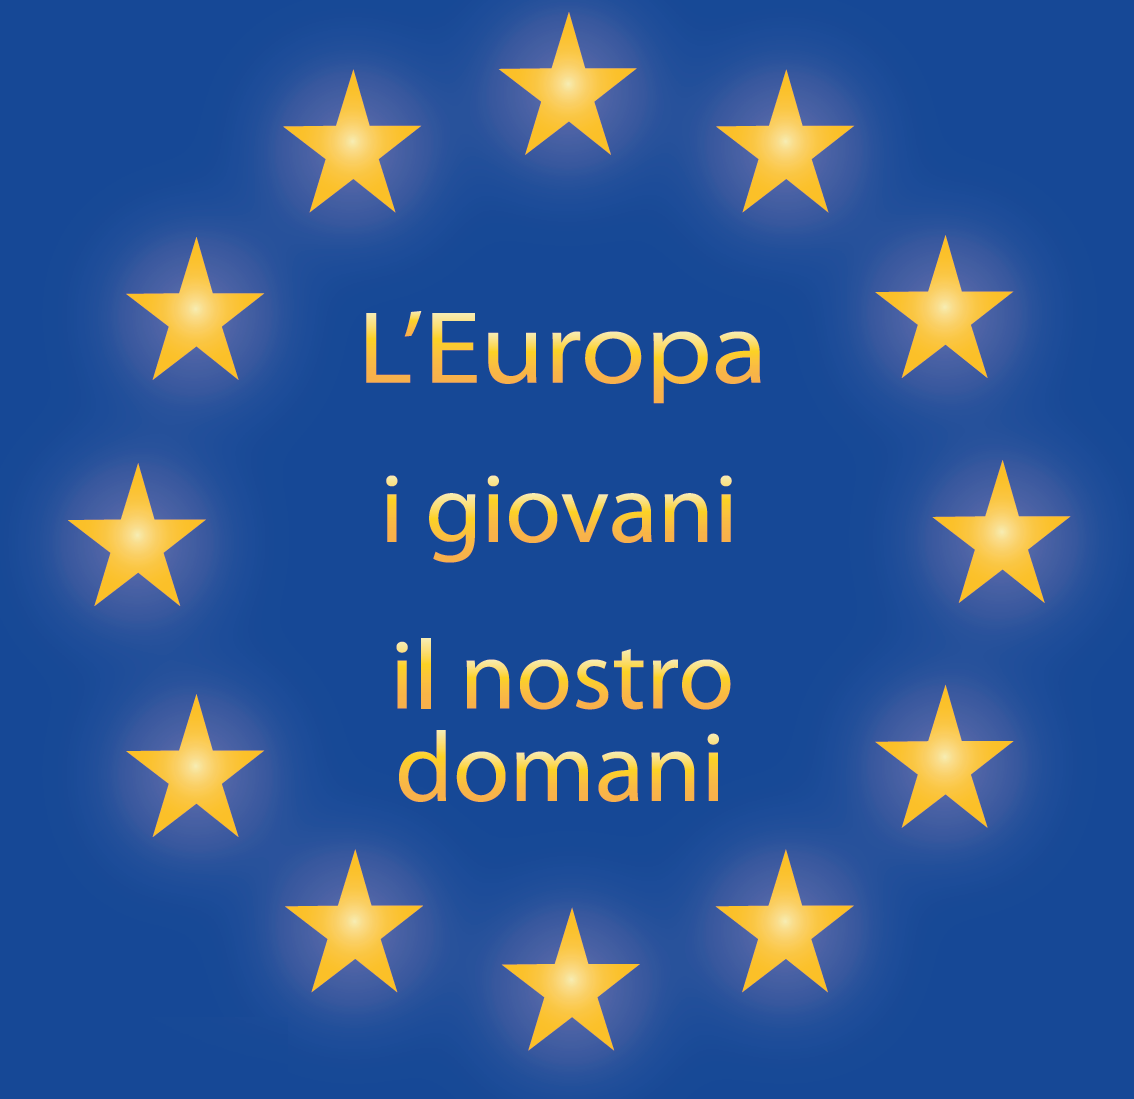 Evento a Vicenza il 5 aprile: L’Europa, i giovani, il nostro domani